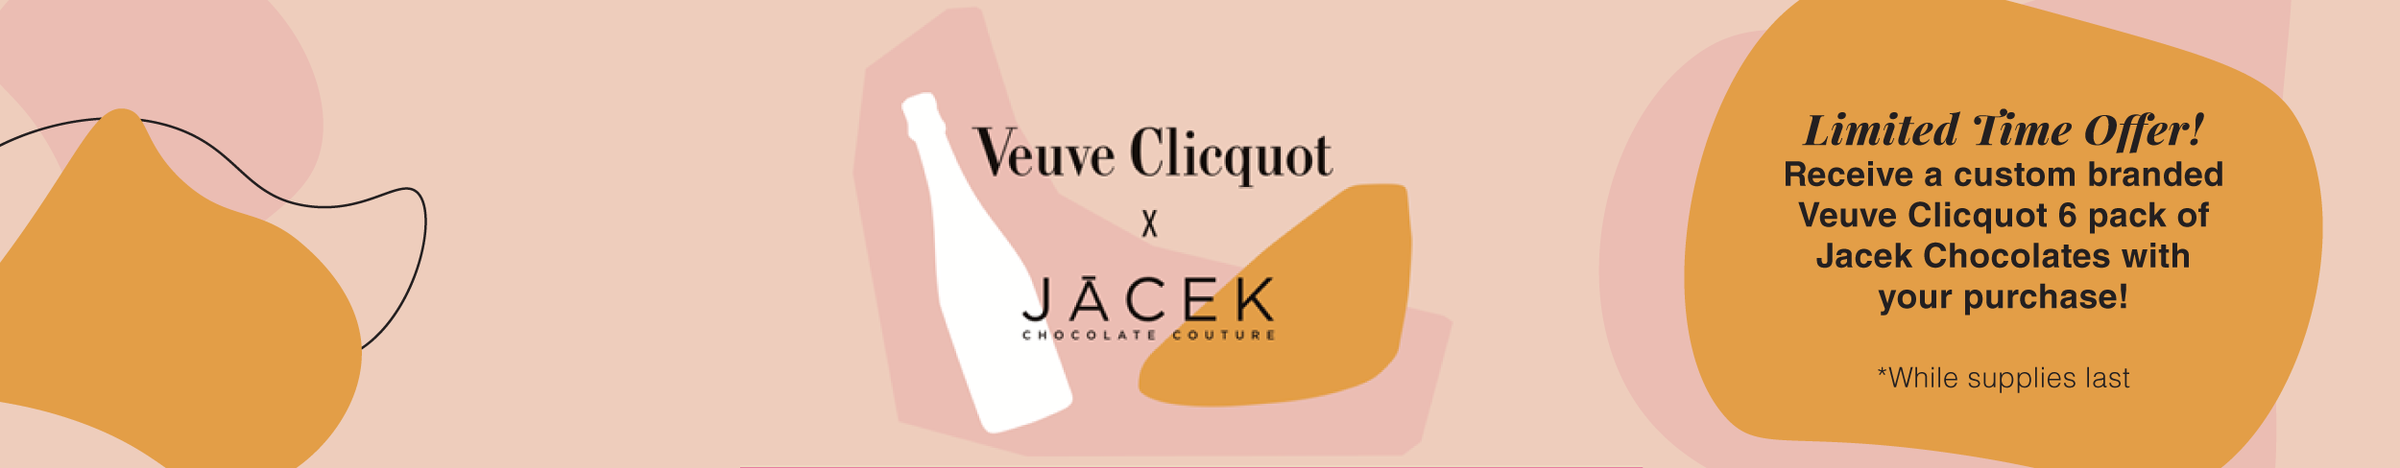 Veuve Clicquot x Jacek Chocolate Couture